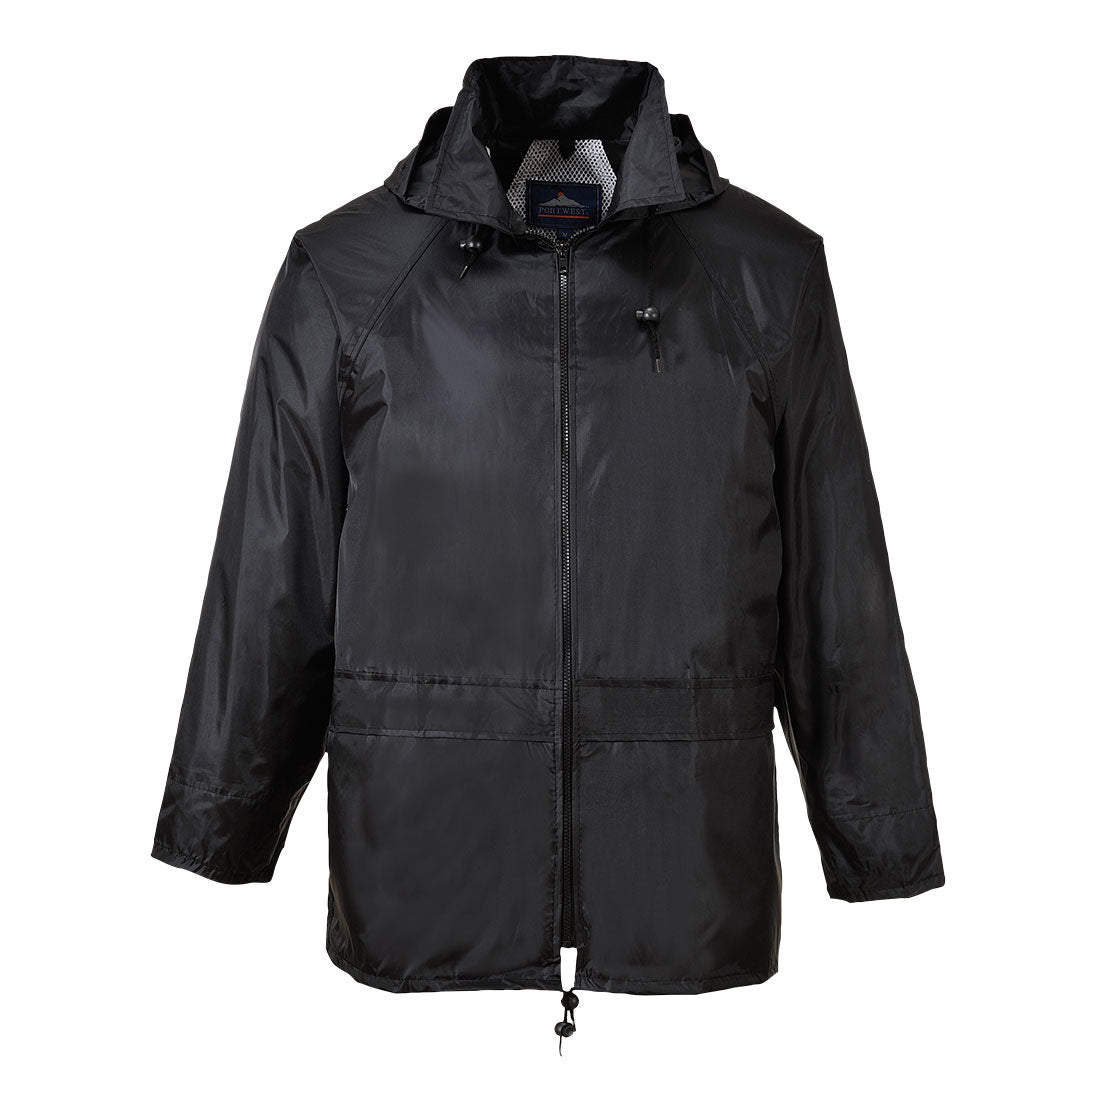 Portwest Rainsuit Classic Jacket Water resistant - Black - Hamtons Direct